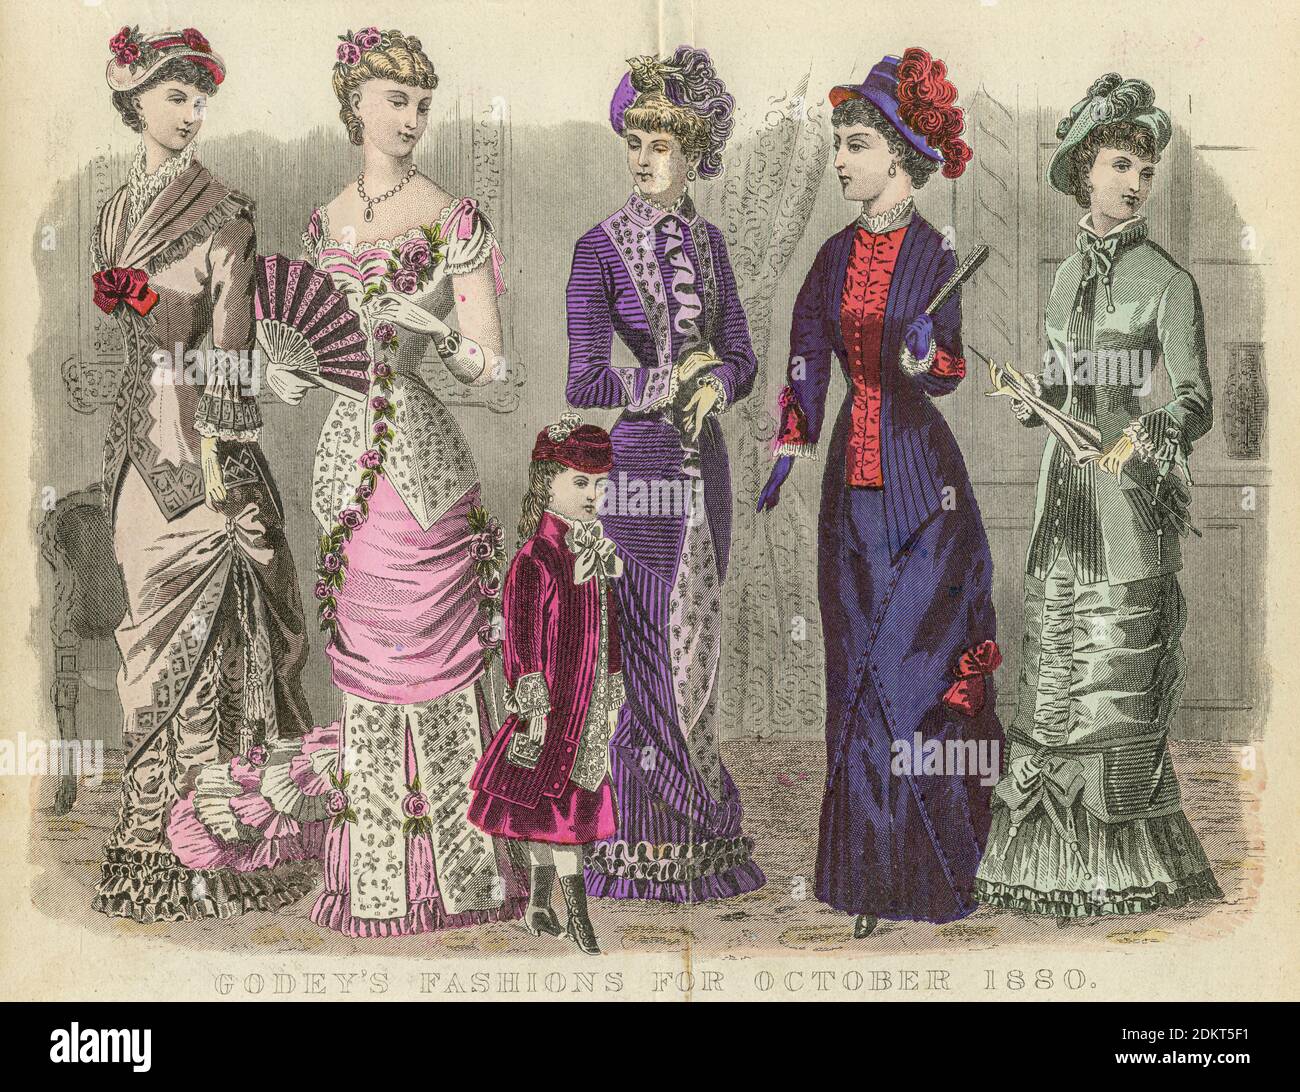 Как одевались в прошлом. Викторианская эпоха мода в Англии 19 века. Викторианская мода в середине 19 века. Англия 19 век мода. Мода 1880 в Англии.